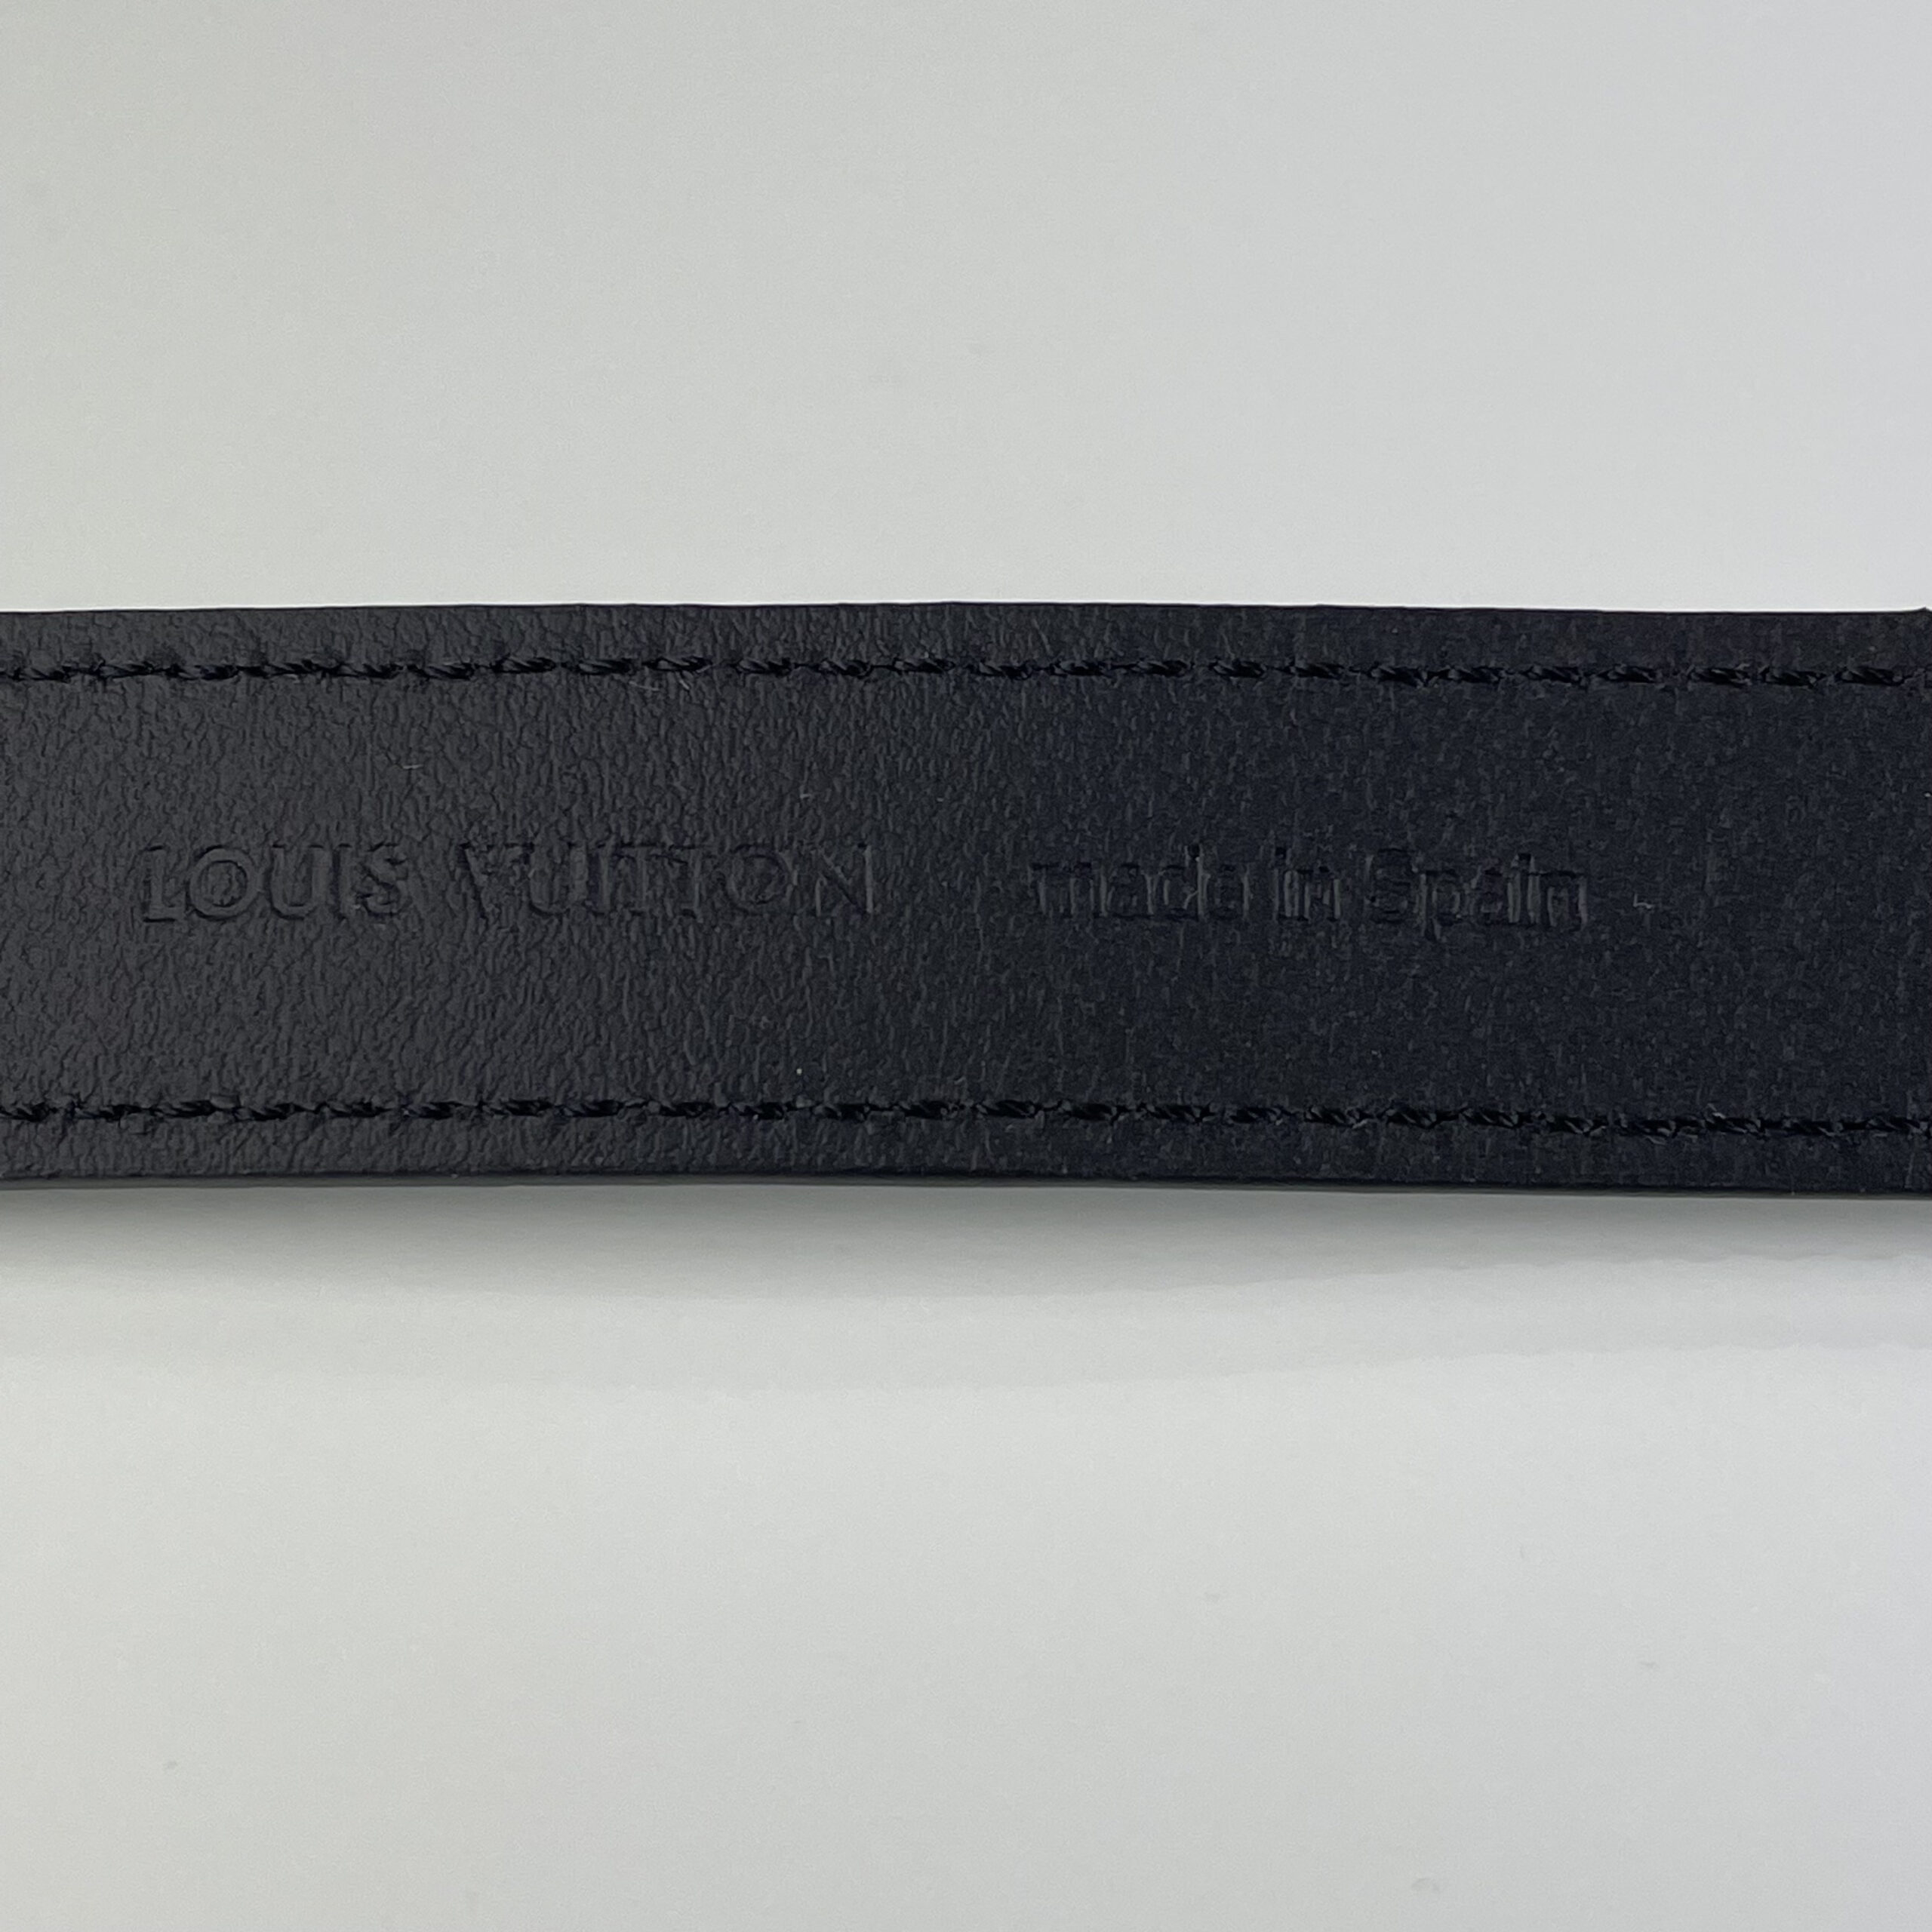 LOUIS VUITTON LV Confidential Bracelet - DYGLOUIS